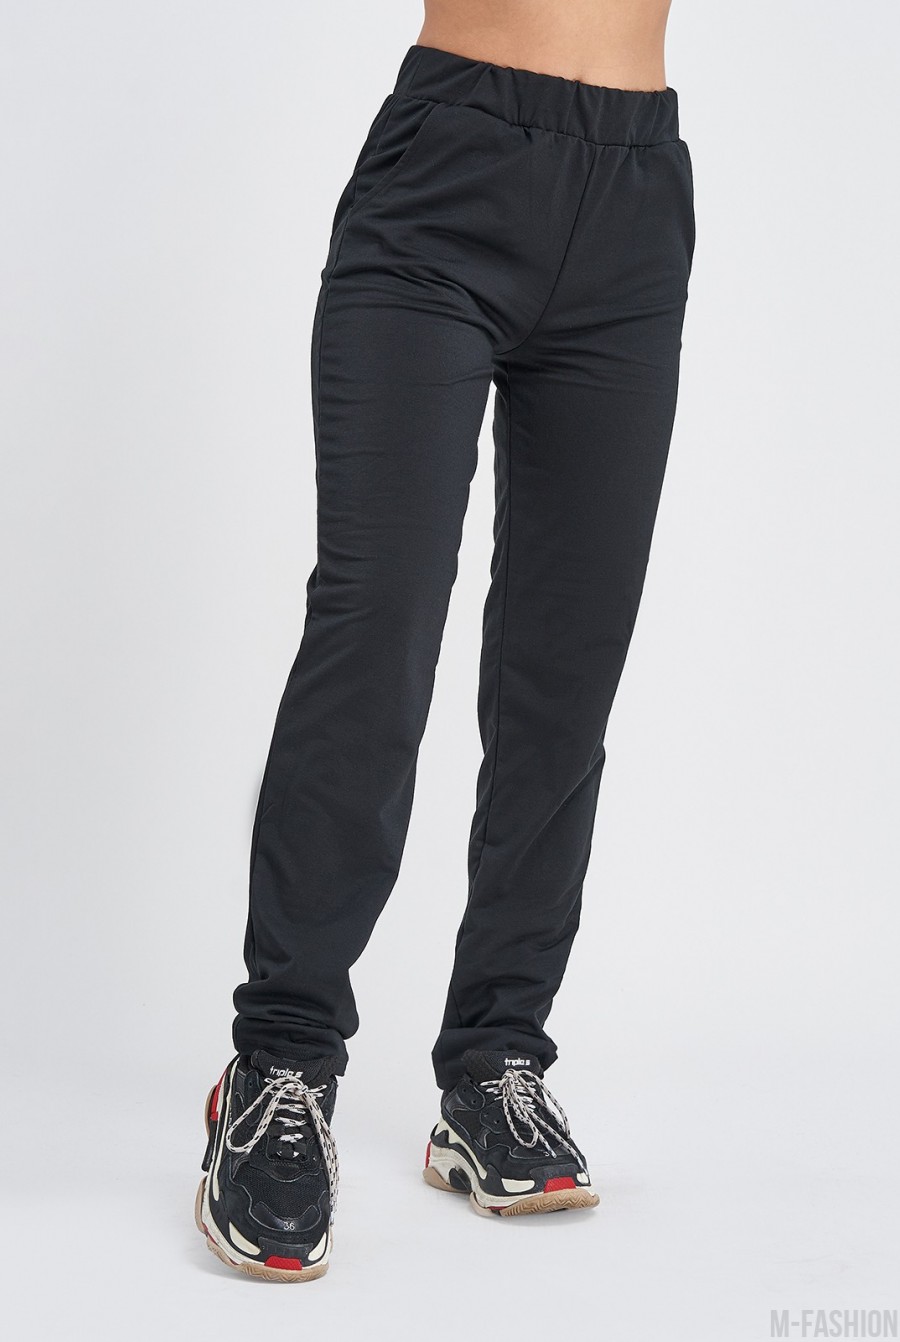 Черные штаны с карманами выполненные из трикотажа - Фото 1